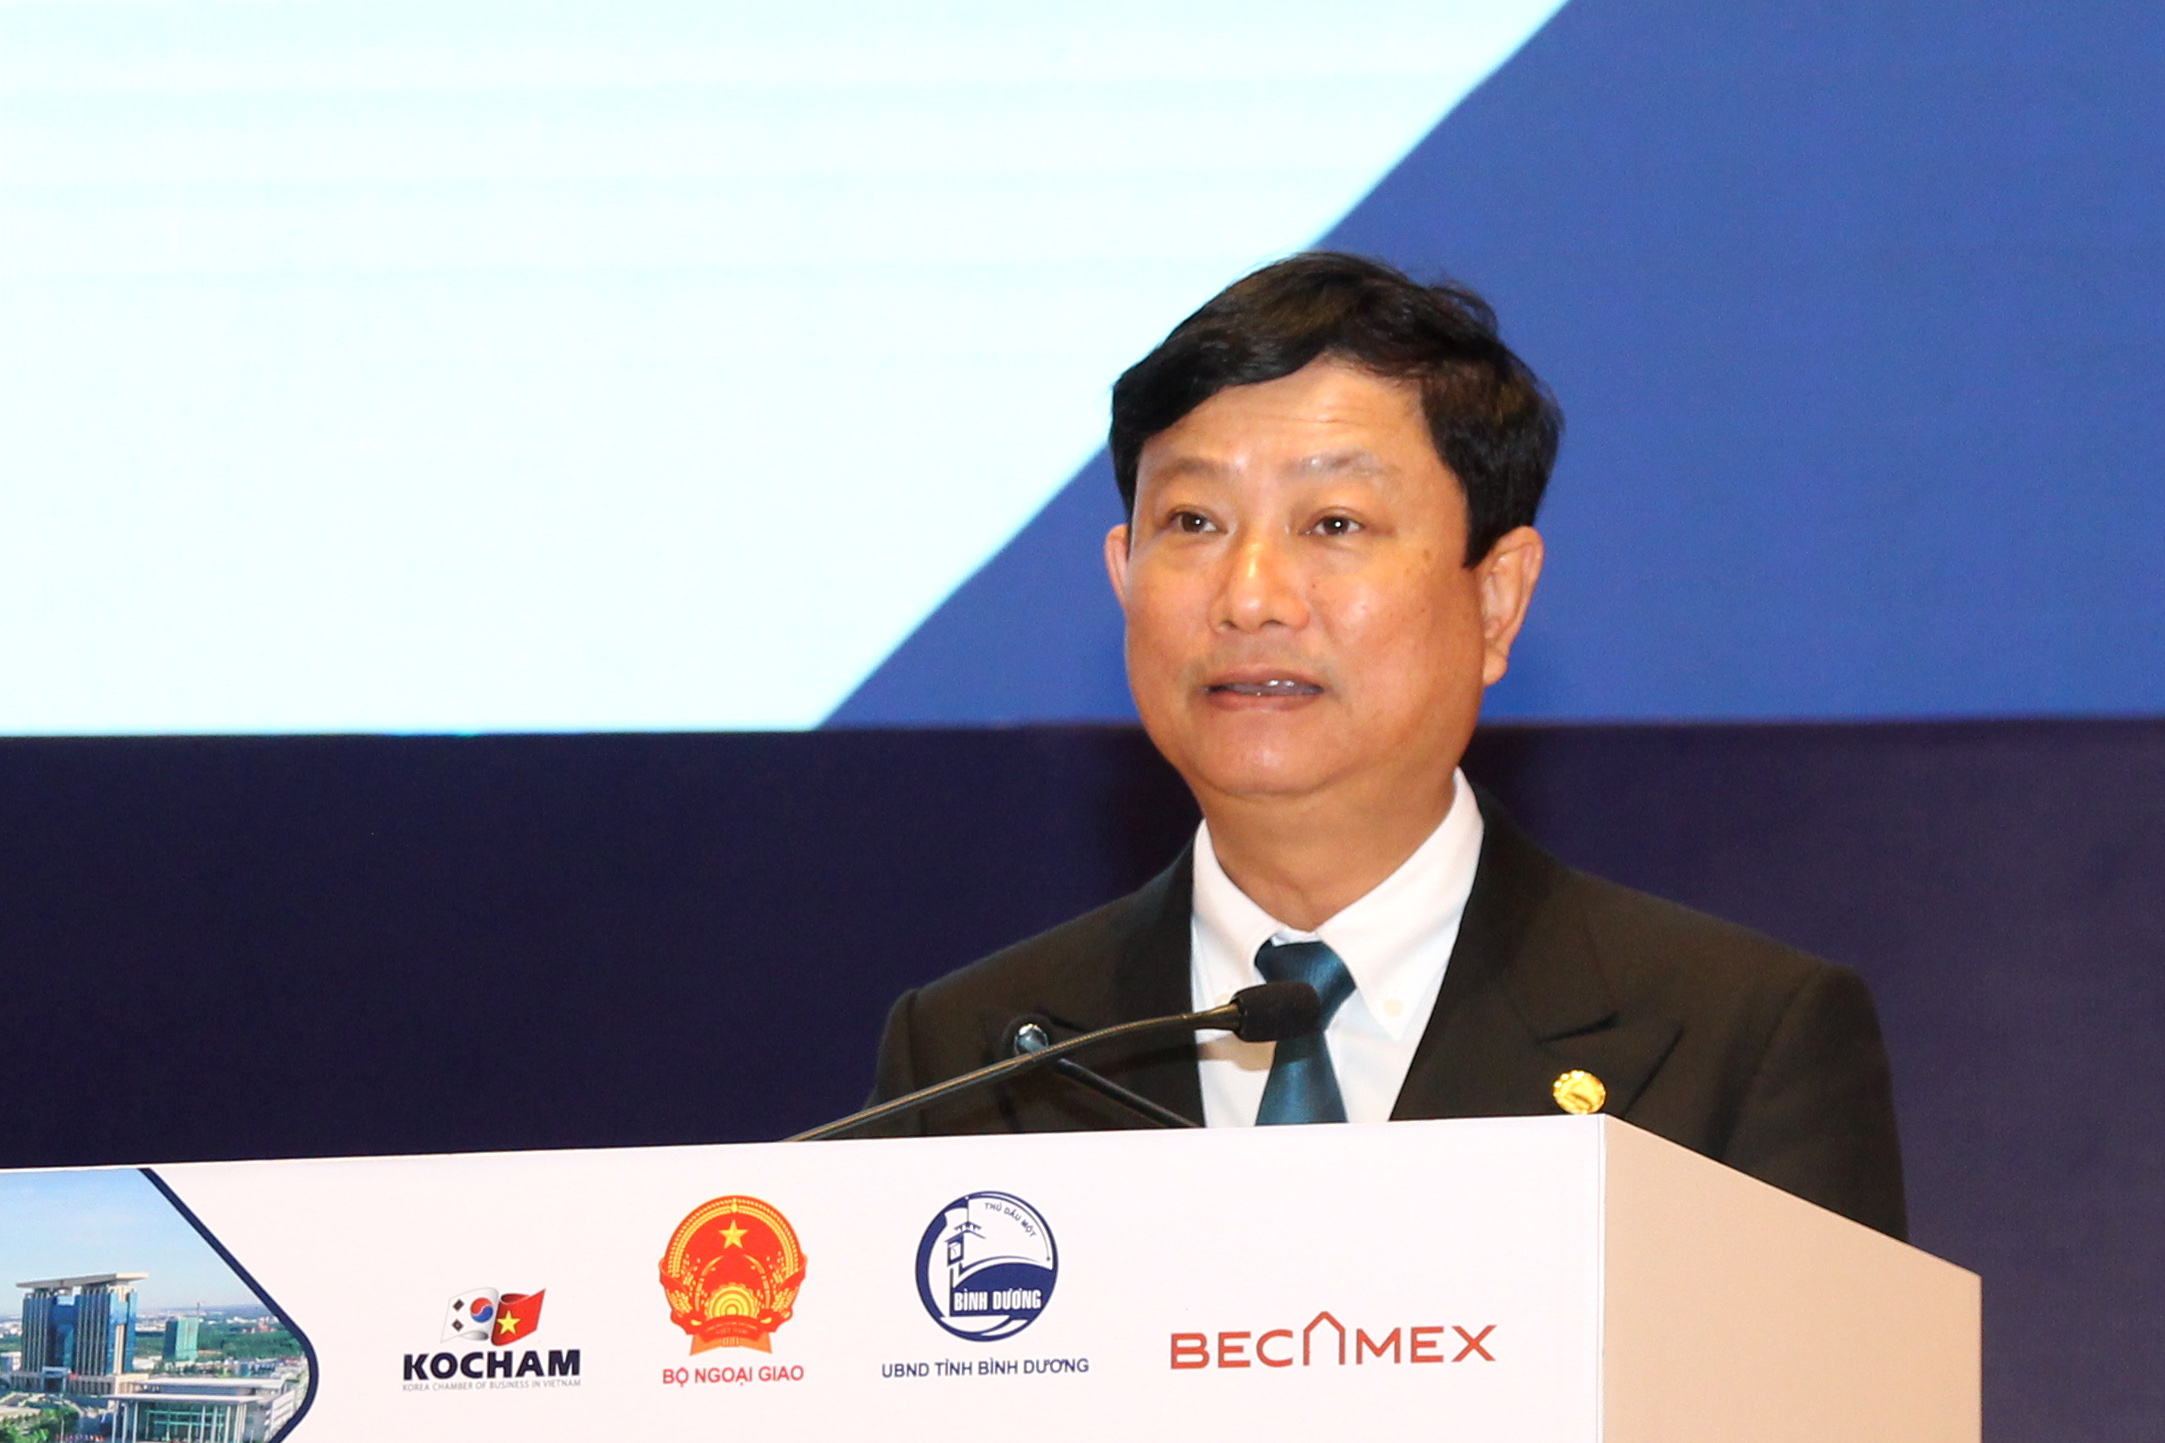 Đồng chí Võ Văn Minh - Chủ tịch UBND tỉnh Bình Dương phát biểu tại Sự kiện (Ảnh: HH)